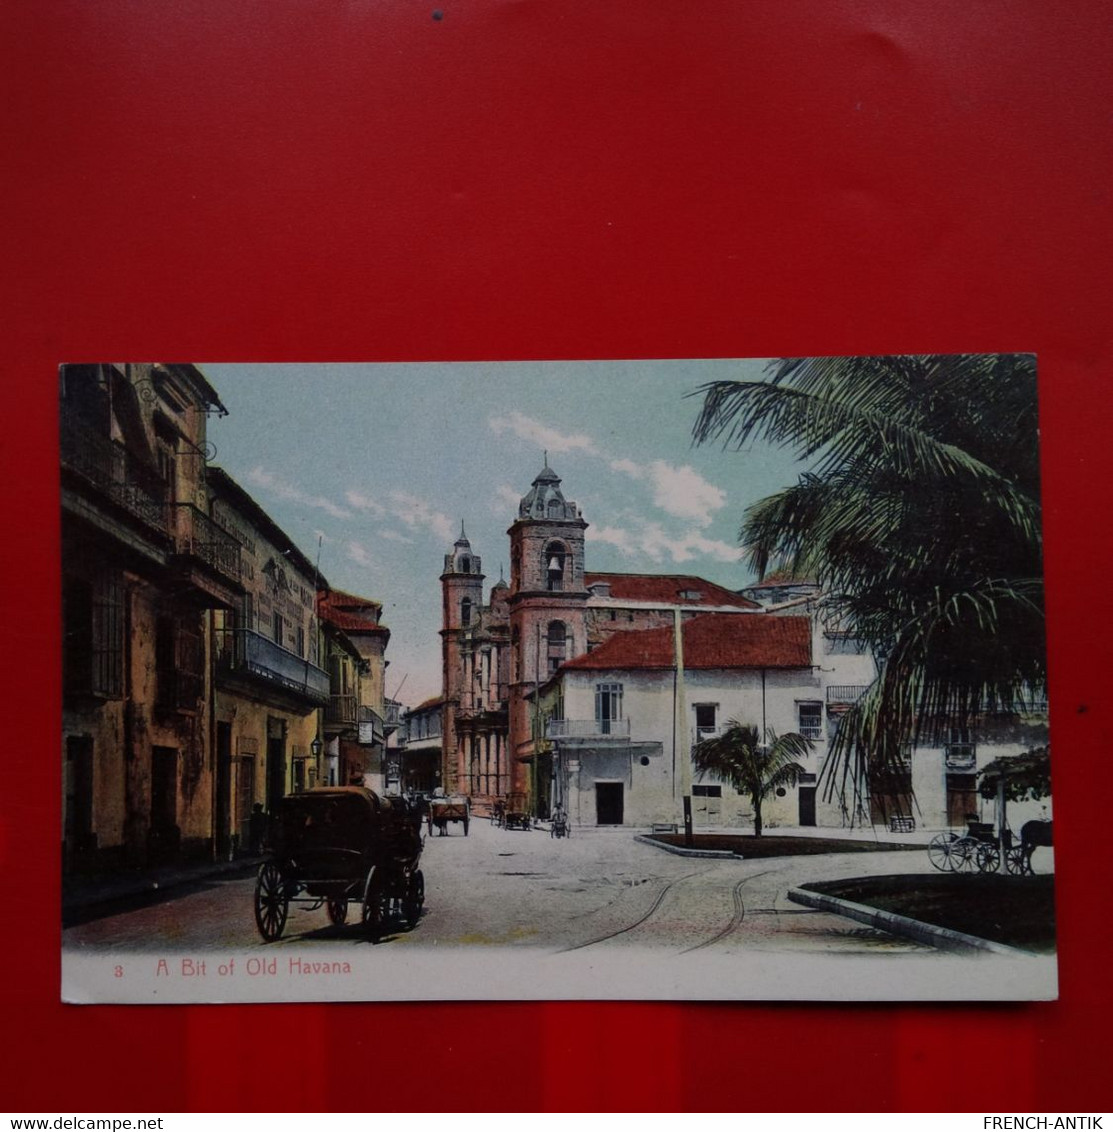 A BIT OF OLD HAVANA - Cuba